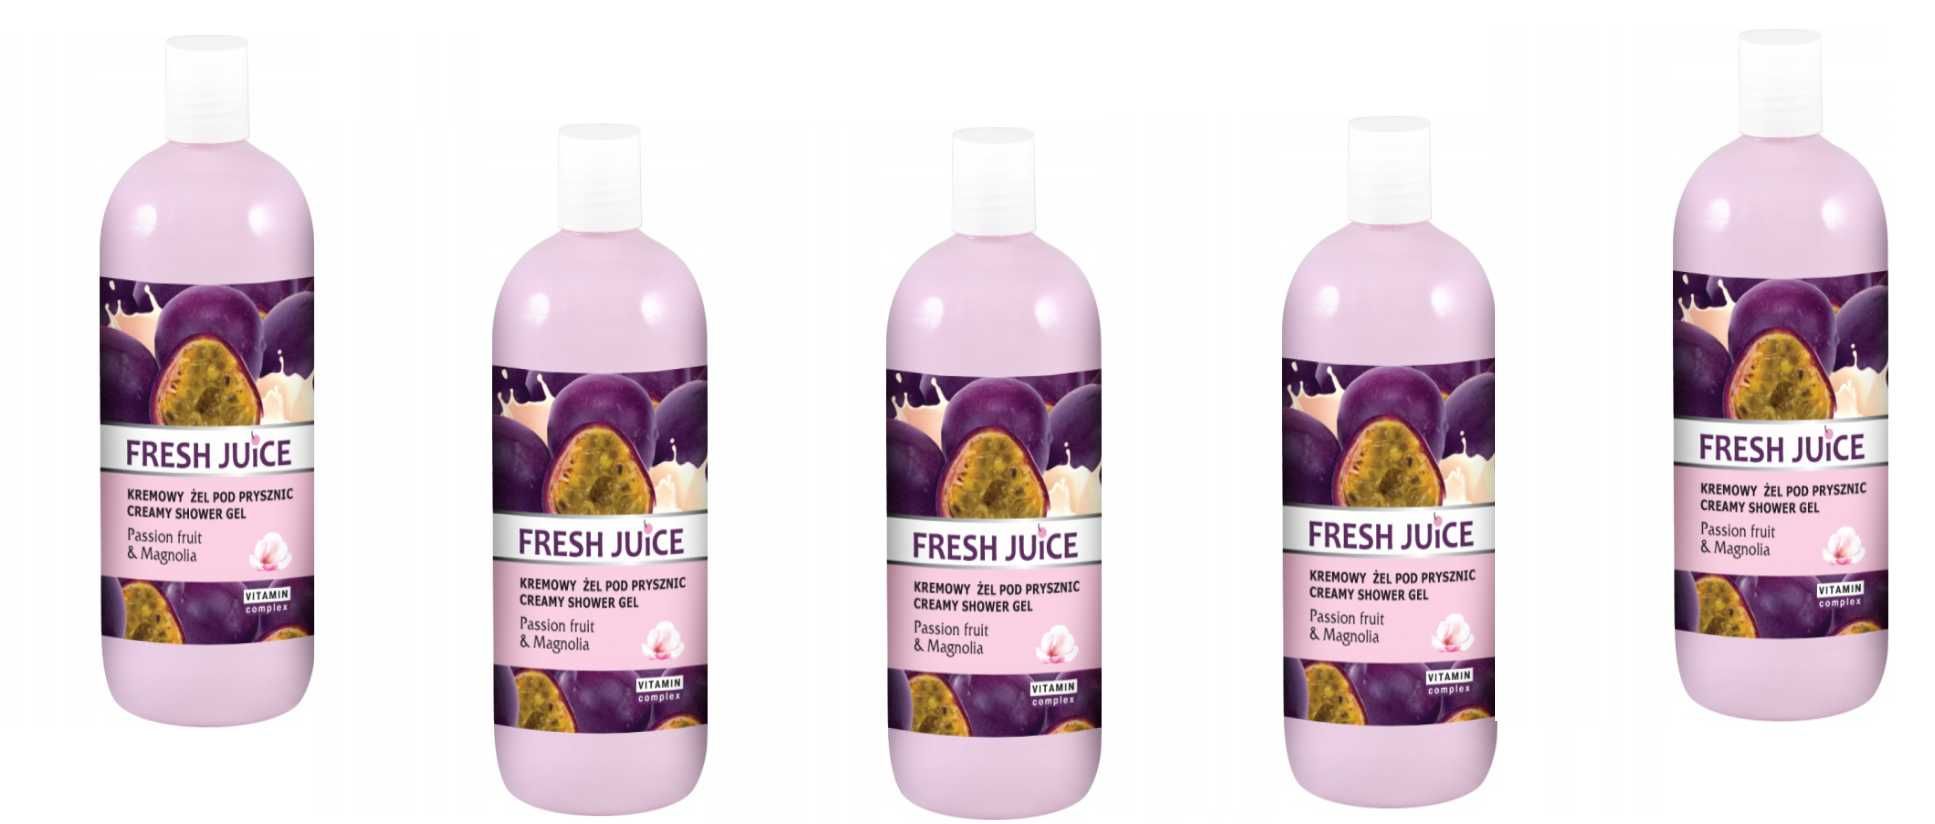 Fresh Juice Żel pod Prysznic Kremowy Passion  i Magnolia 500ml X 5 szt